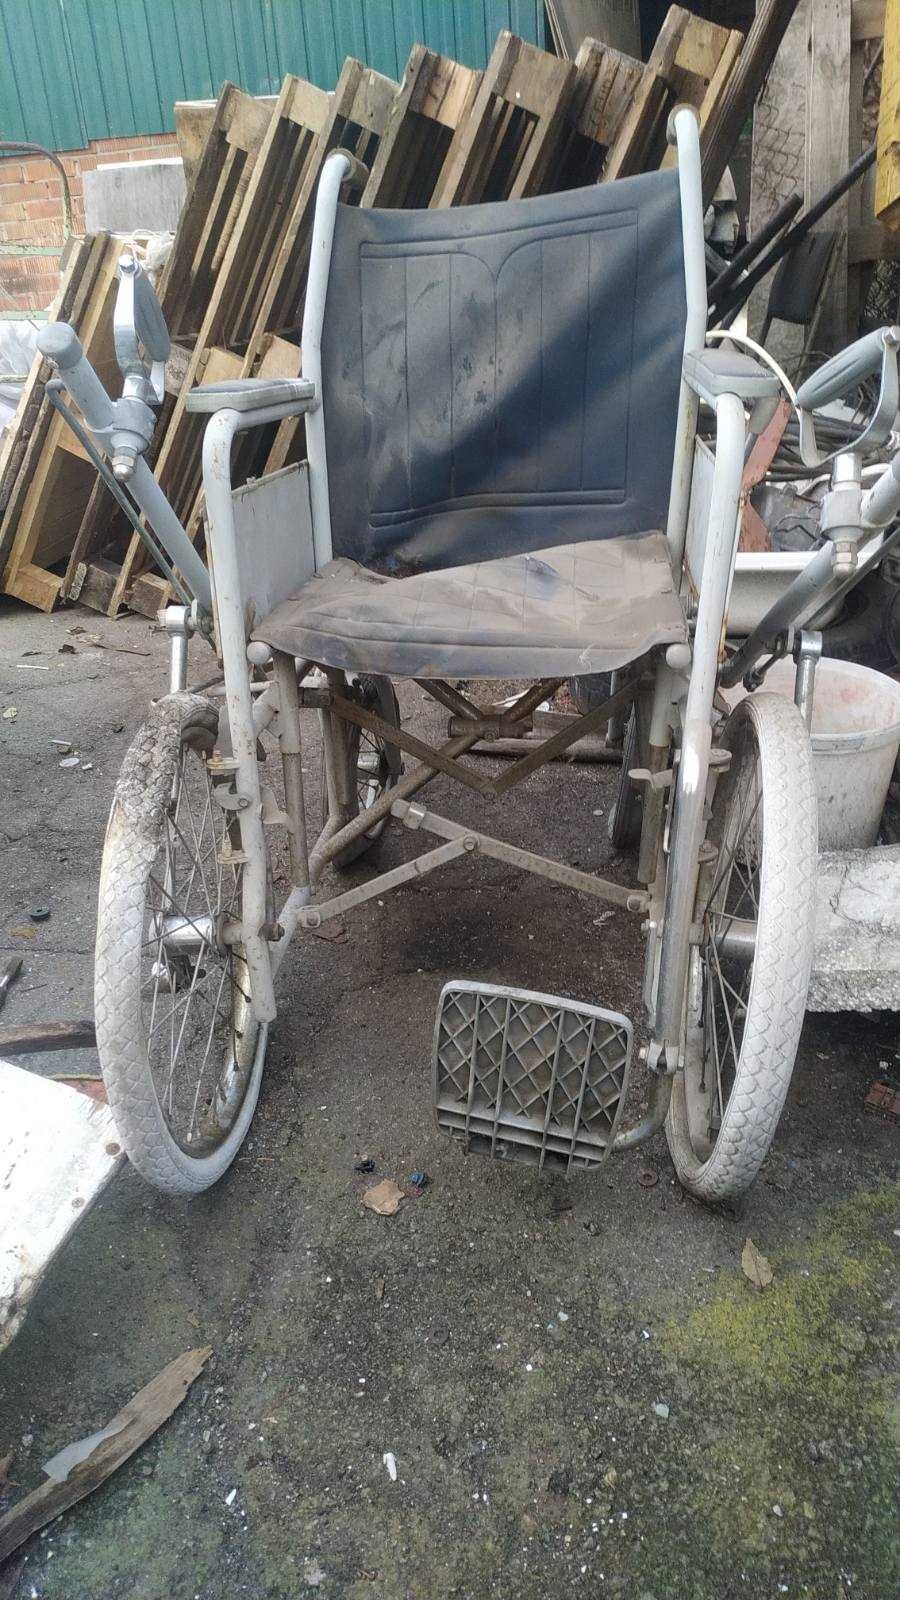 Инвалидная коляска с ручным управлением